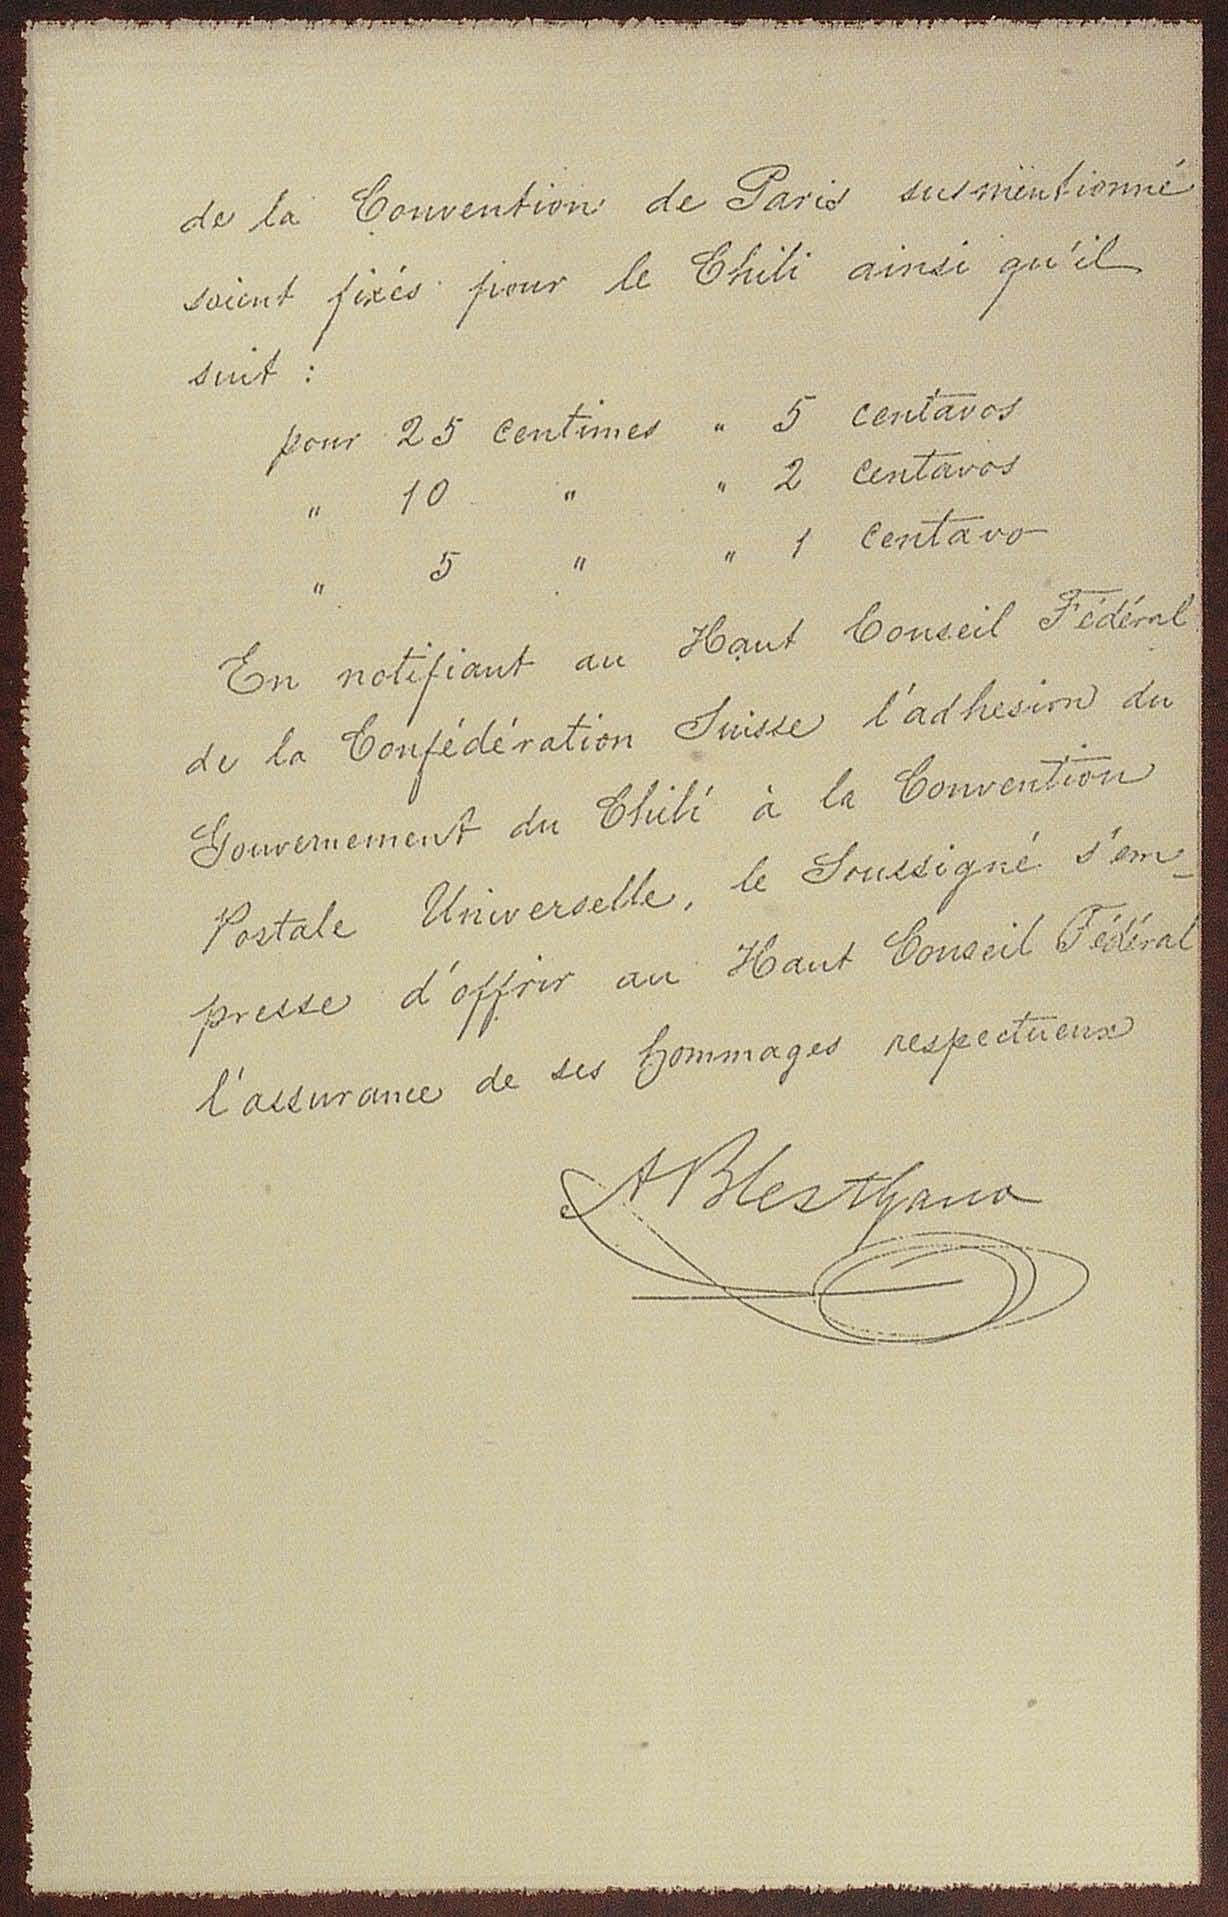 Carta solicitud de ingreso de Chile a la Unión Postal Universal, redactada por el diplomático Alberto Blest Gana.